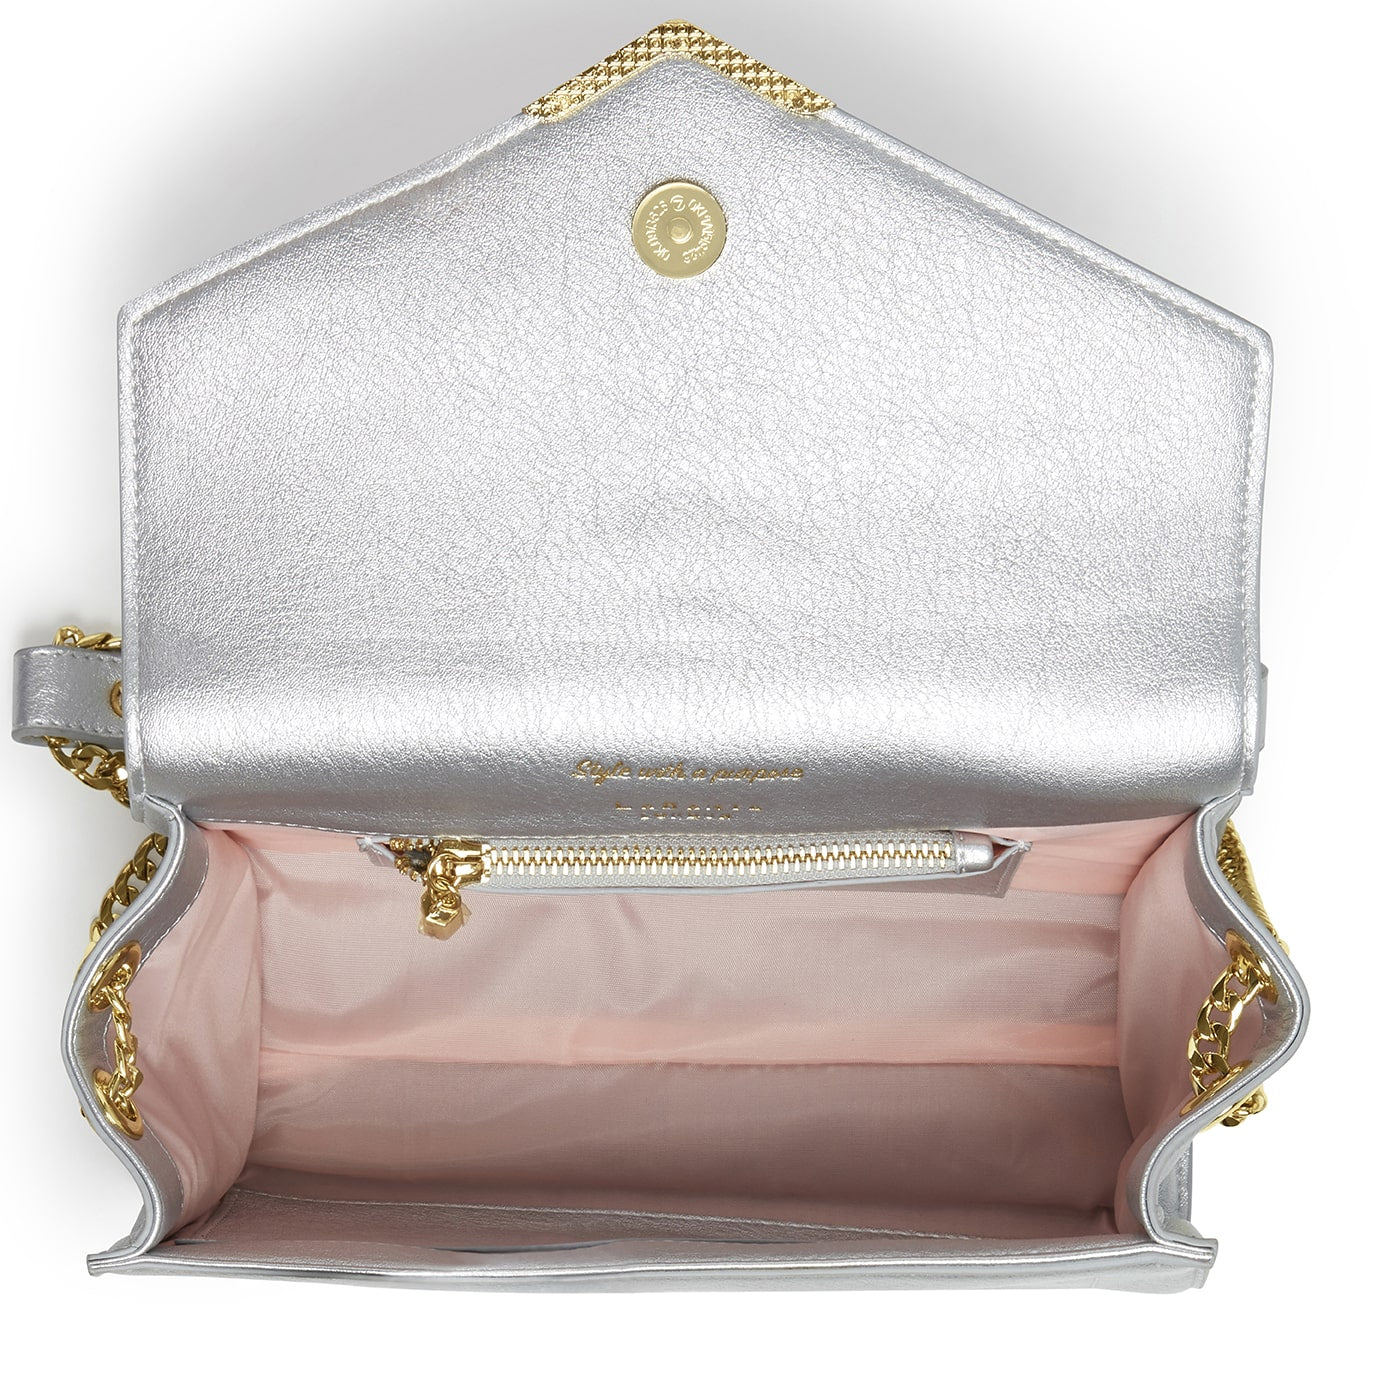 Kensington Silver Vegan Cross-Body Bag